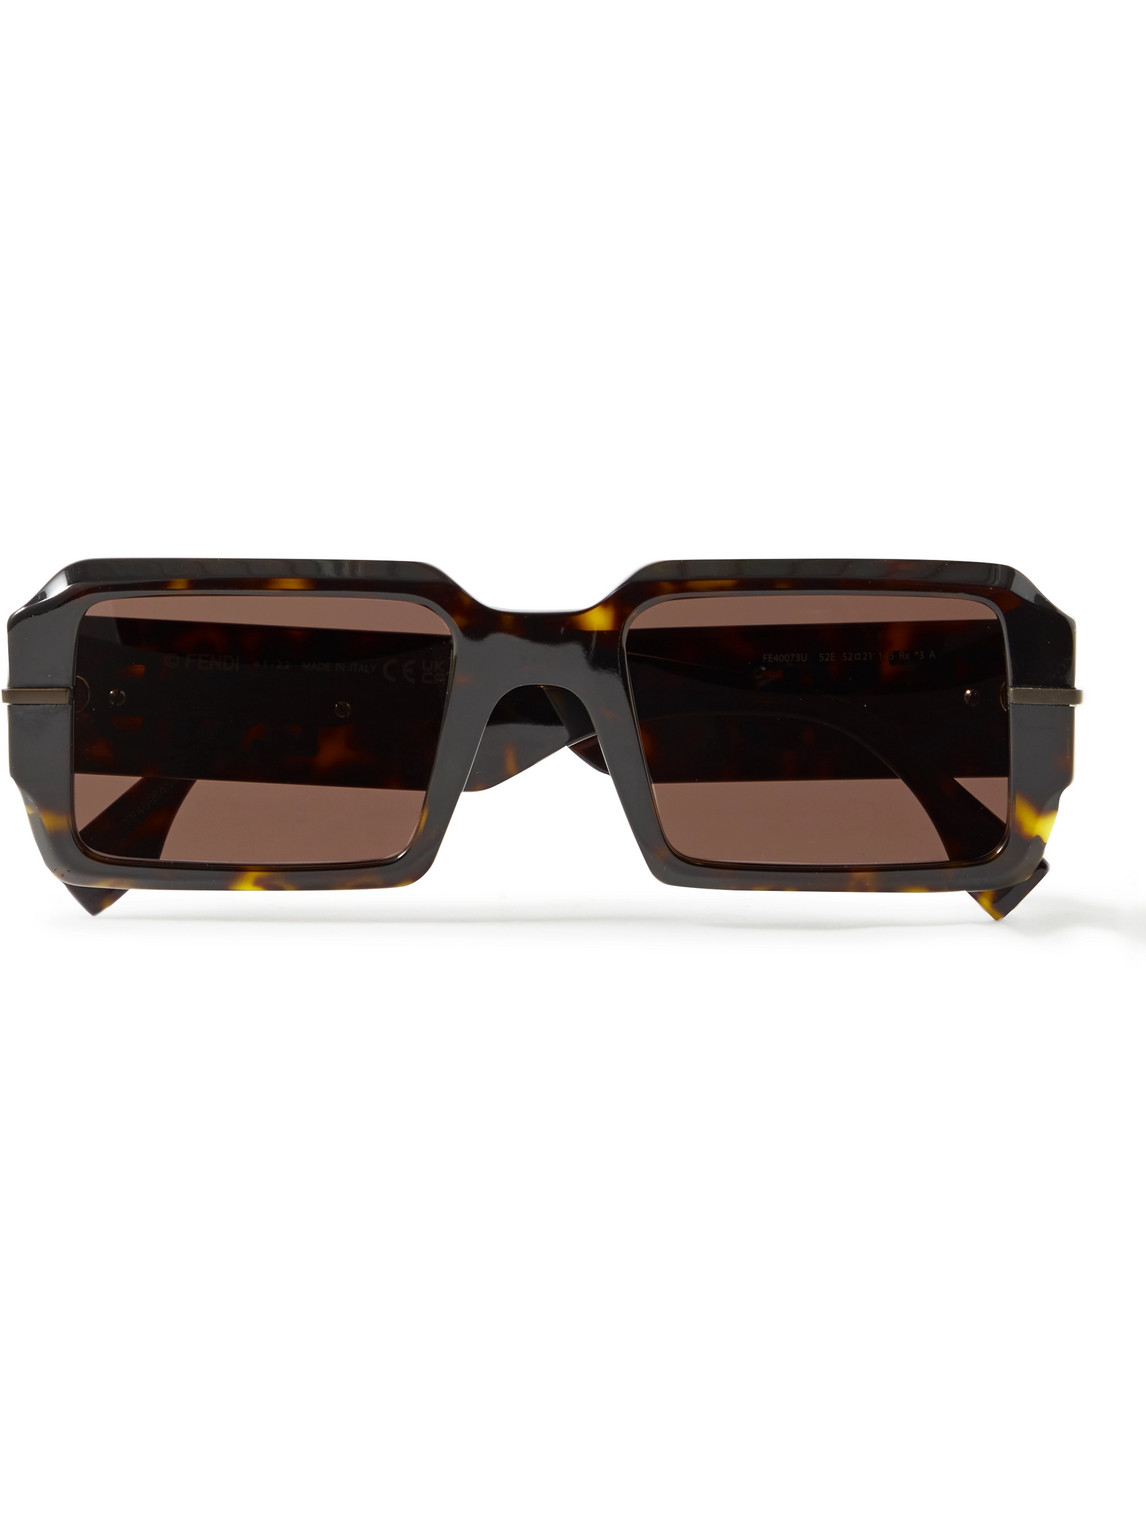 Fendi Square-frame Tortoiseshell Acetate Sunglasses